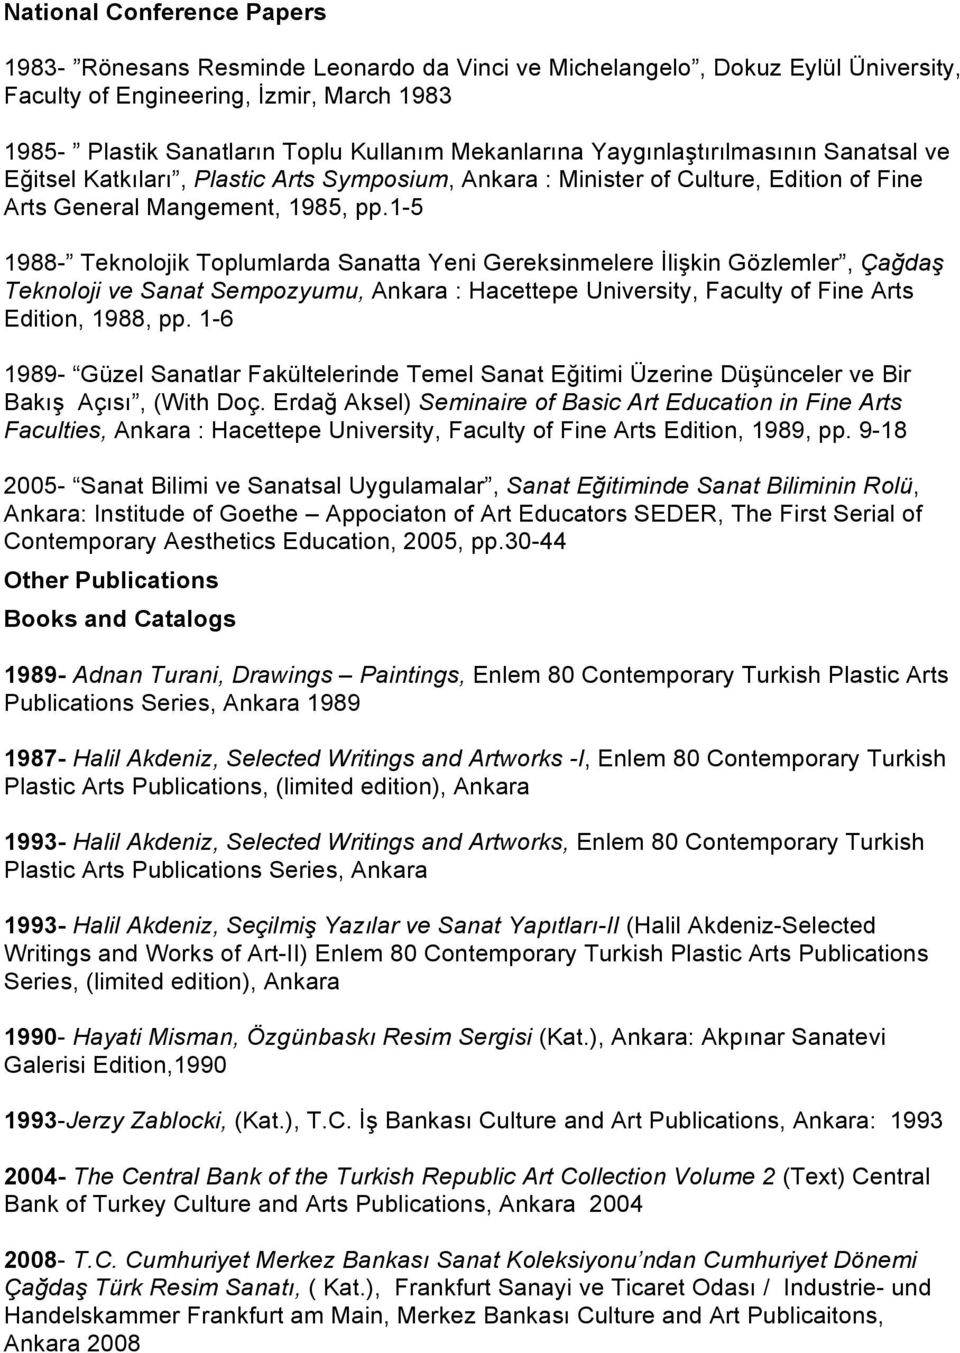 1-5 1988- Teknolojik Toplumlarda Sanatta Yeni Gereksinmelere İlişkin Gözlemler, Çağdaş Teknoloji ve Sanat Sempozyumu, Ankara : Hacettepe University, Faculty of Fine Arts Edition, 1988, pp.